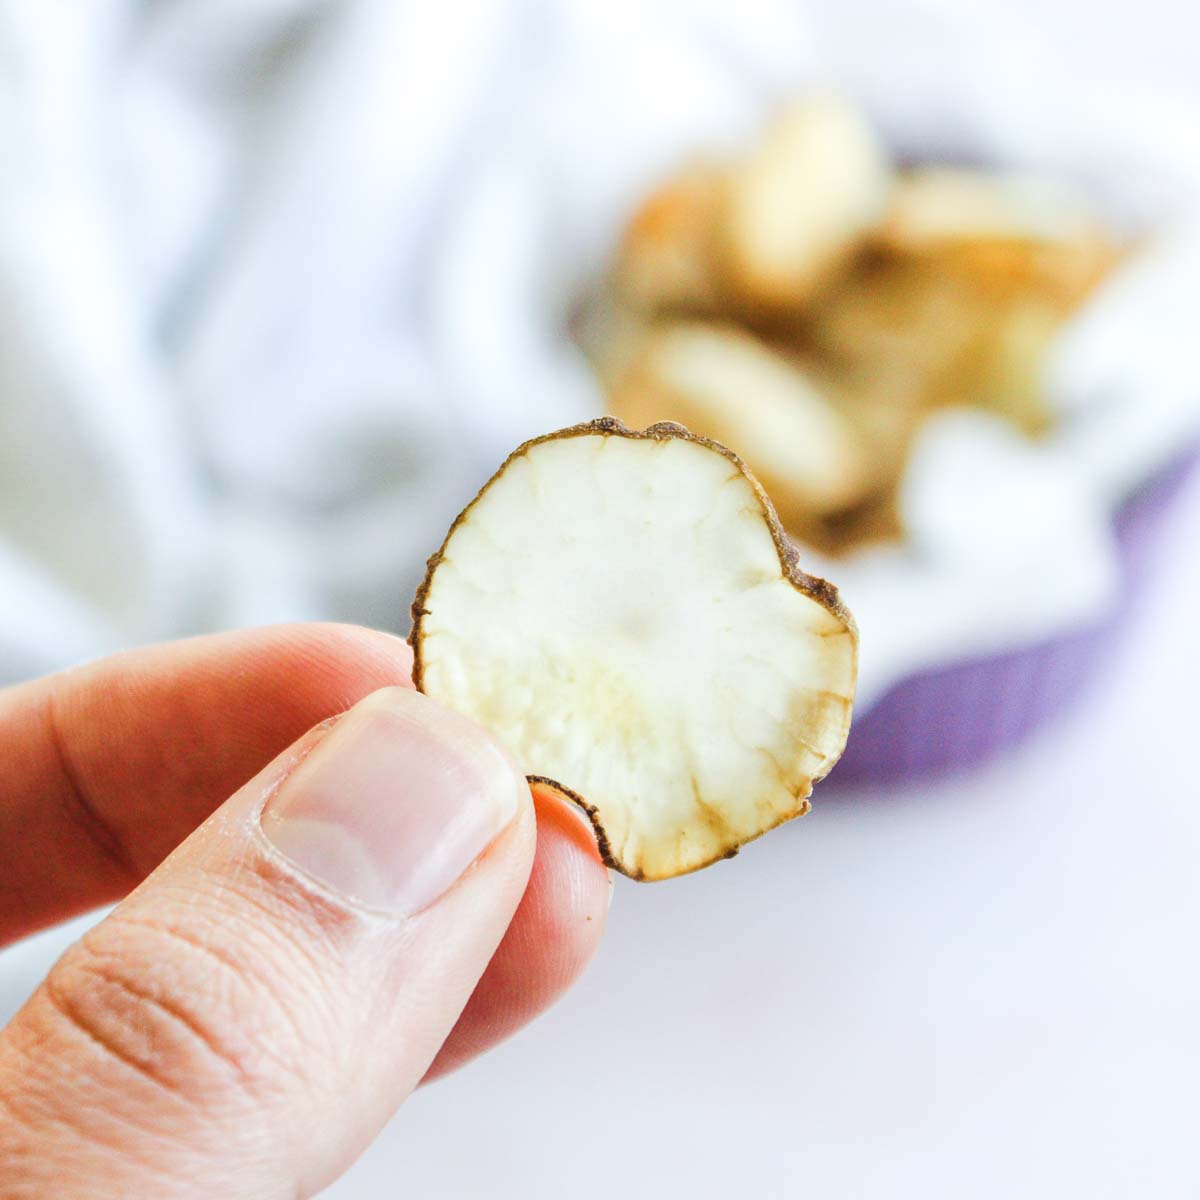 Hand holding crispy baked jerusalem artichoke chip.